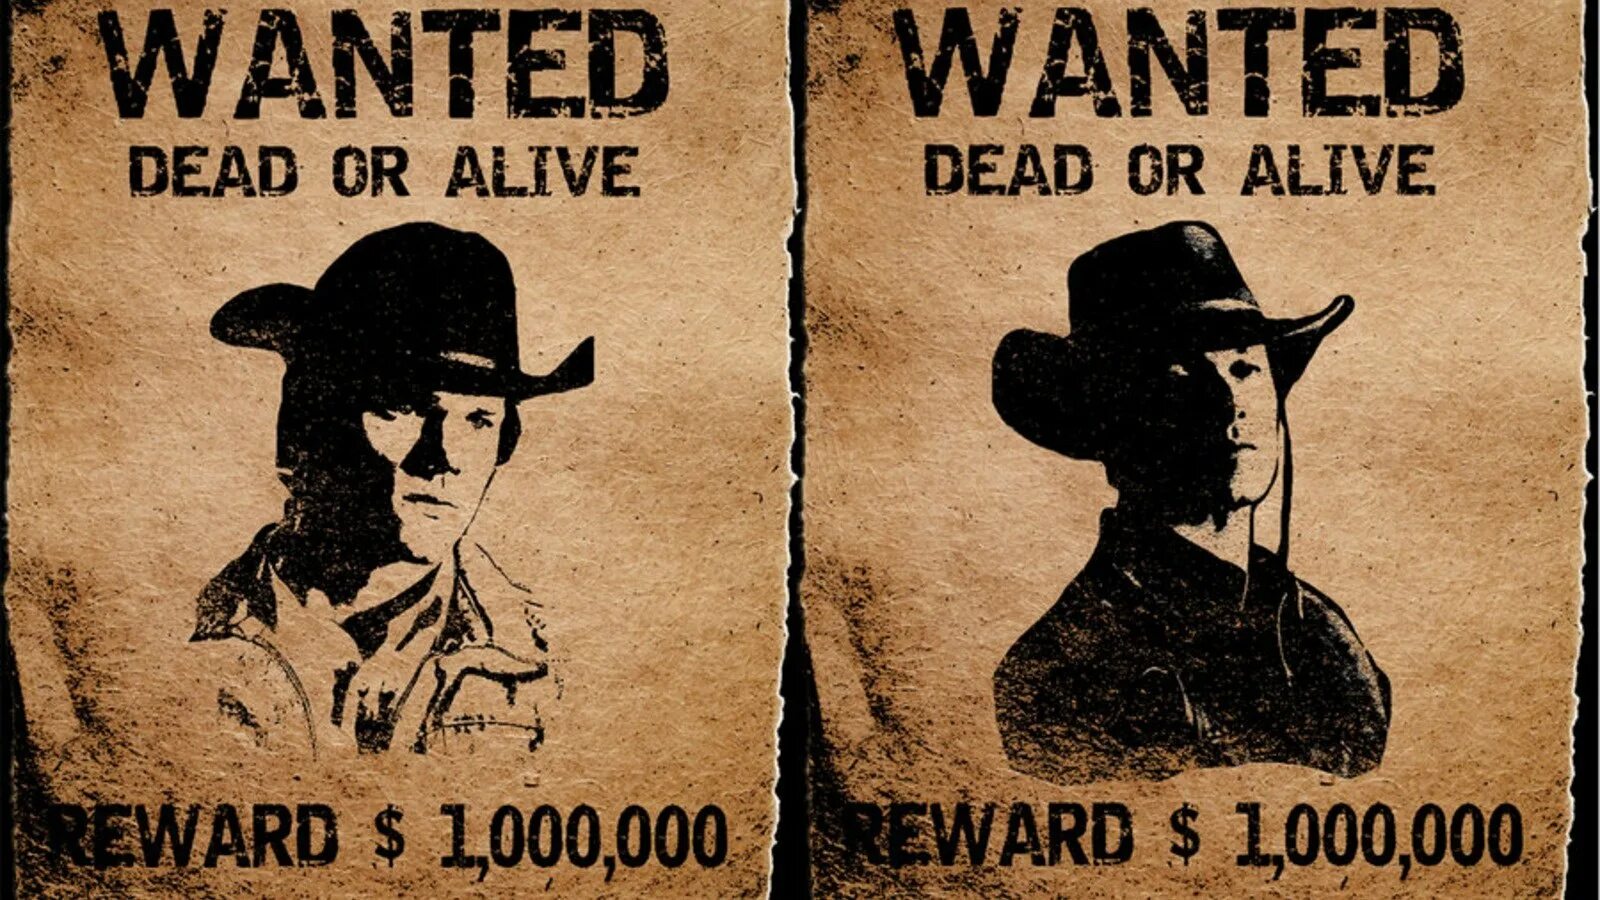 Lived talked wanted. Wanted плакат. Плакат розыска. Плакат разыскивается в стиле вестерн. Плакат в стиле дикого Запада.